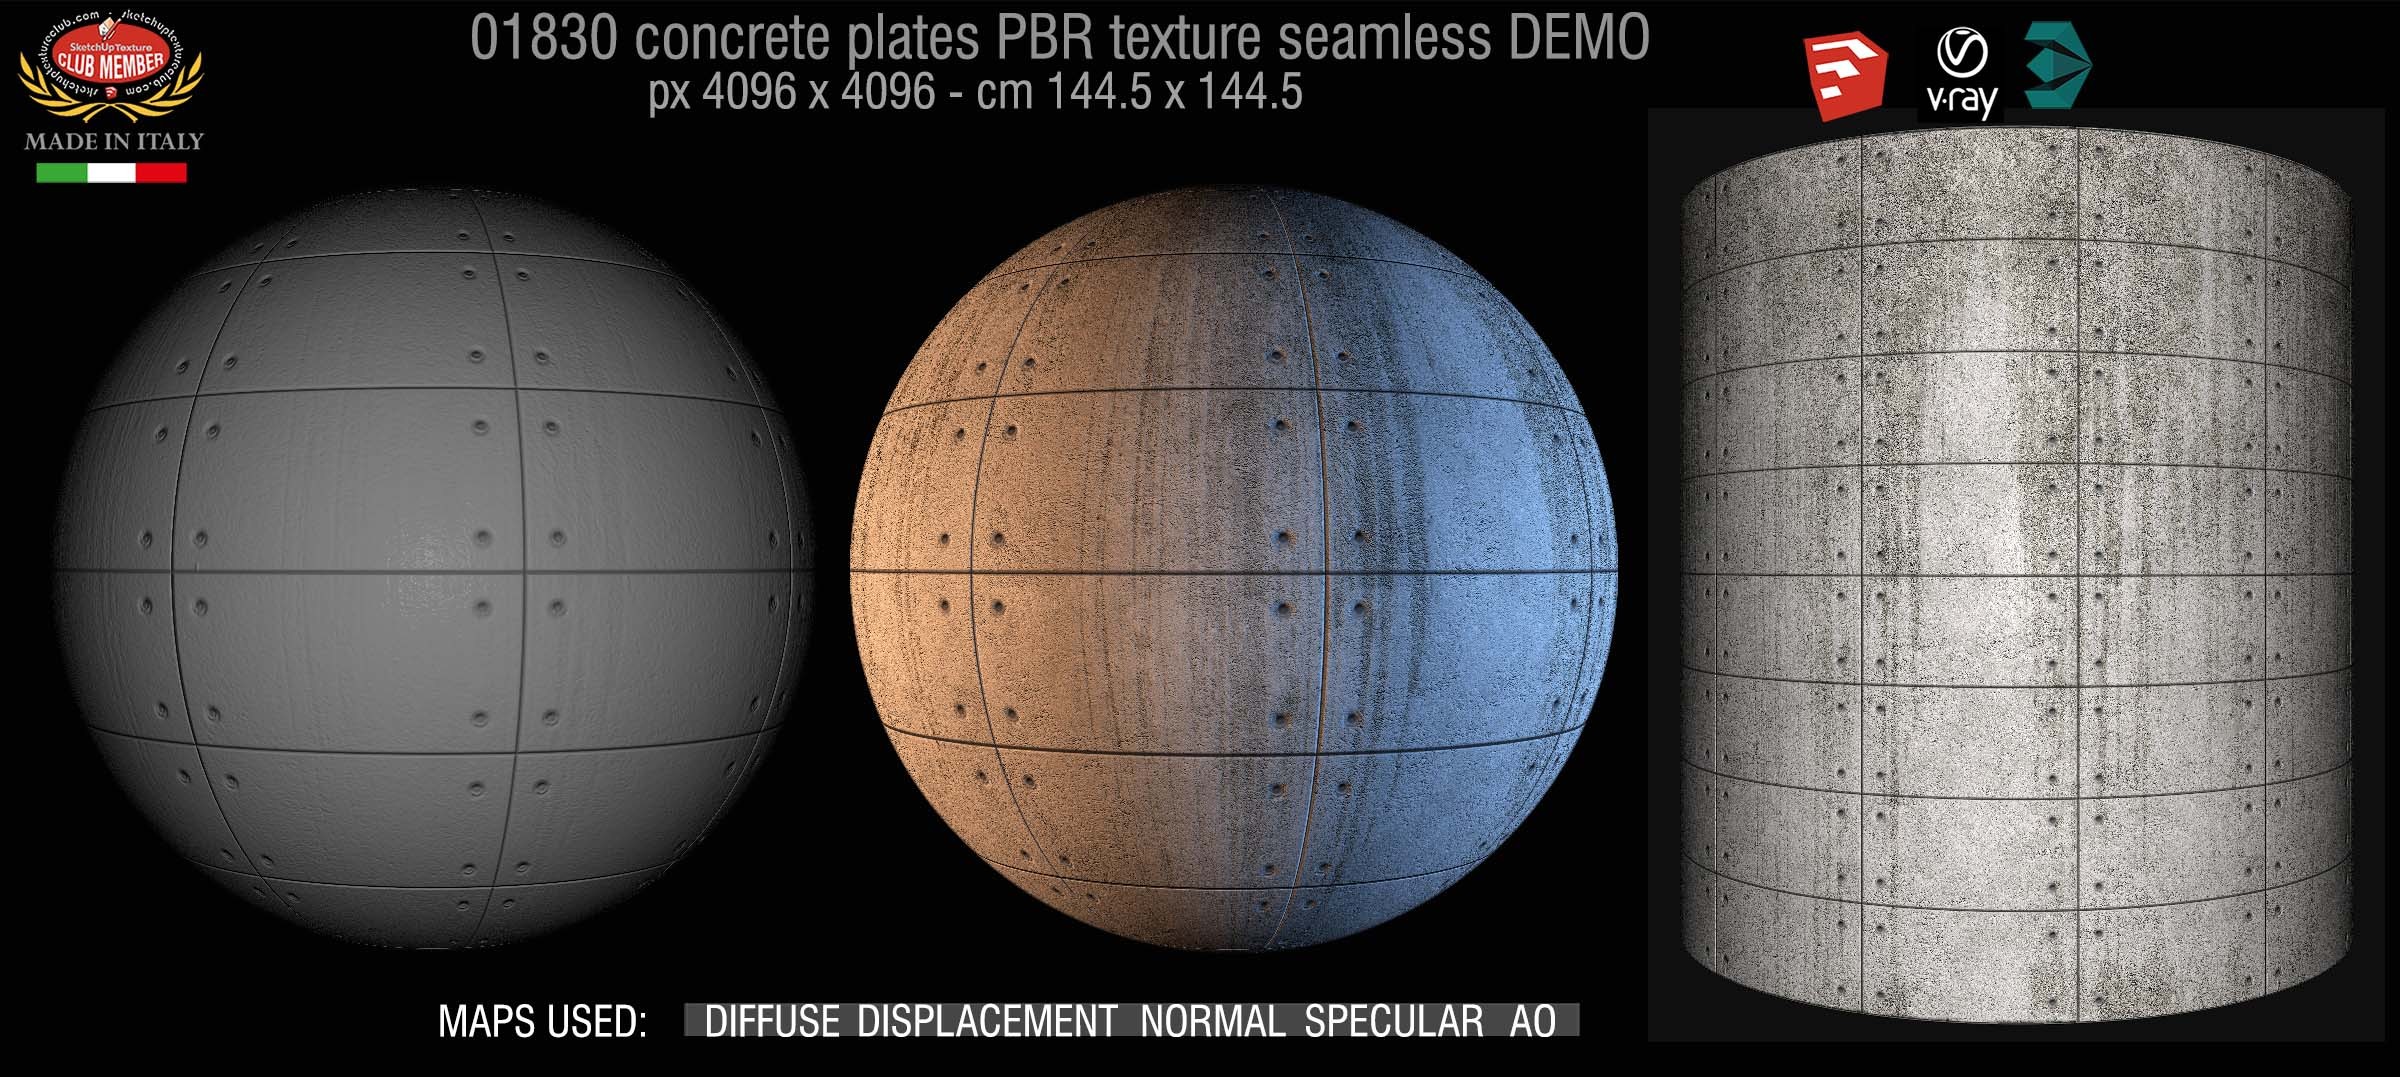 01830 Tadao Ando concrete plates PBR texture seamless DEMO